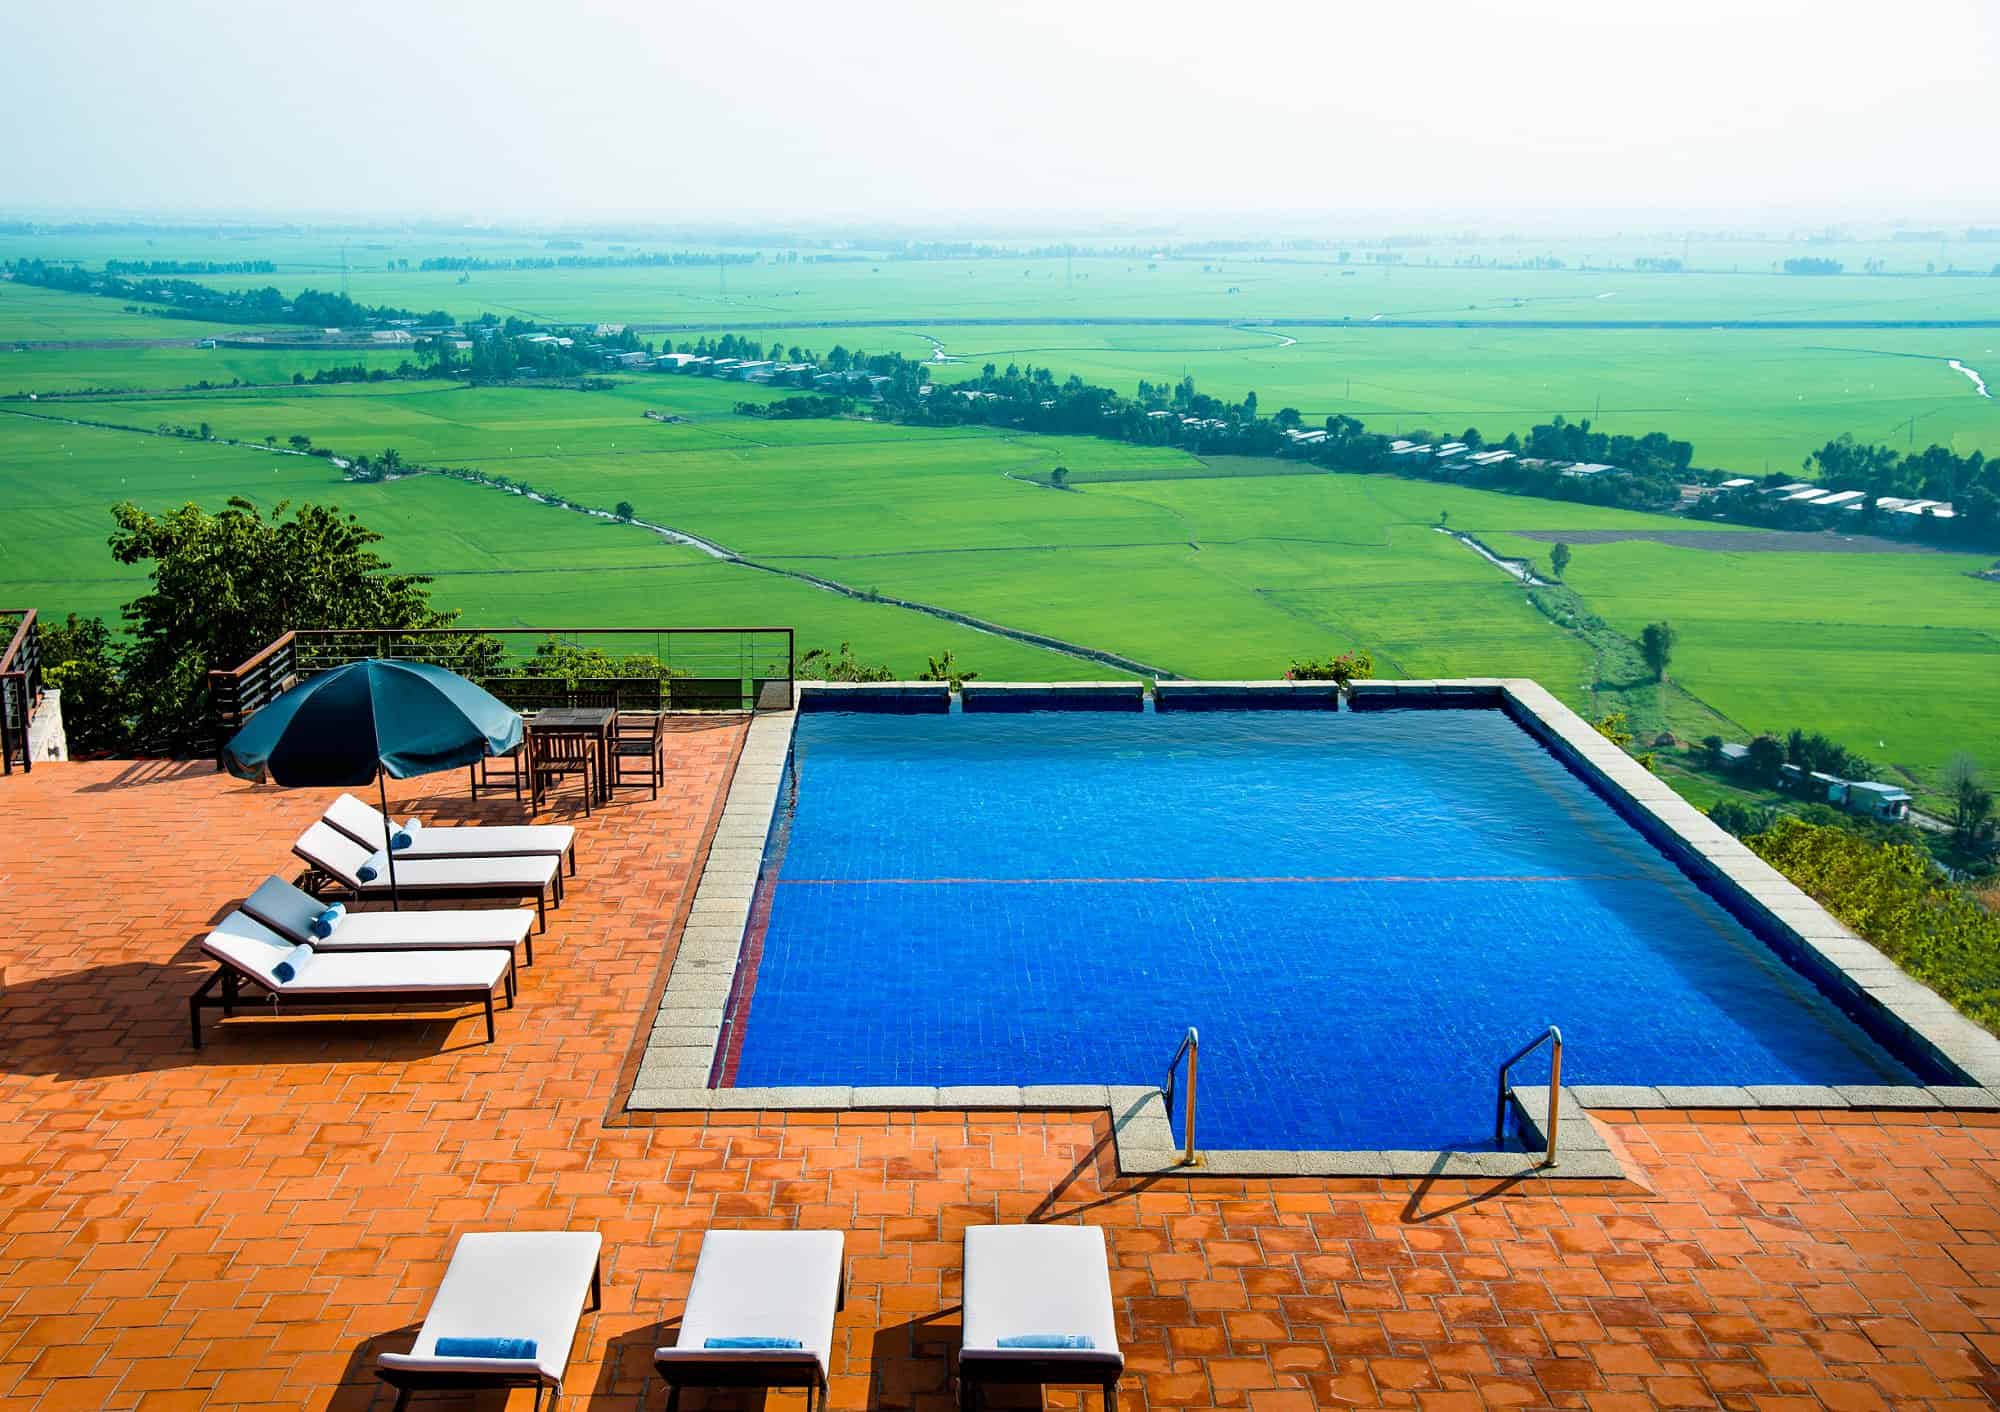 Bể bơi ngoài trời với view nhìn ra cánh đồng lúa bạt ngàn của thành phố Châu Đốc (ảnh sưu tầm)